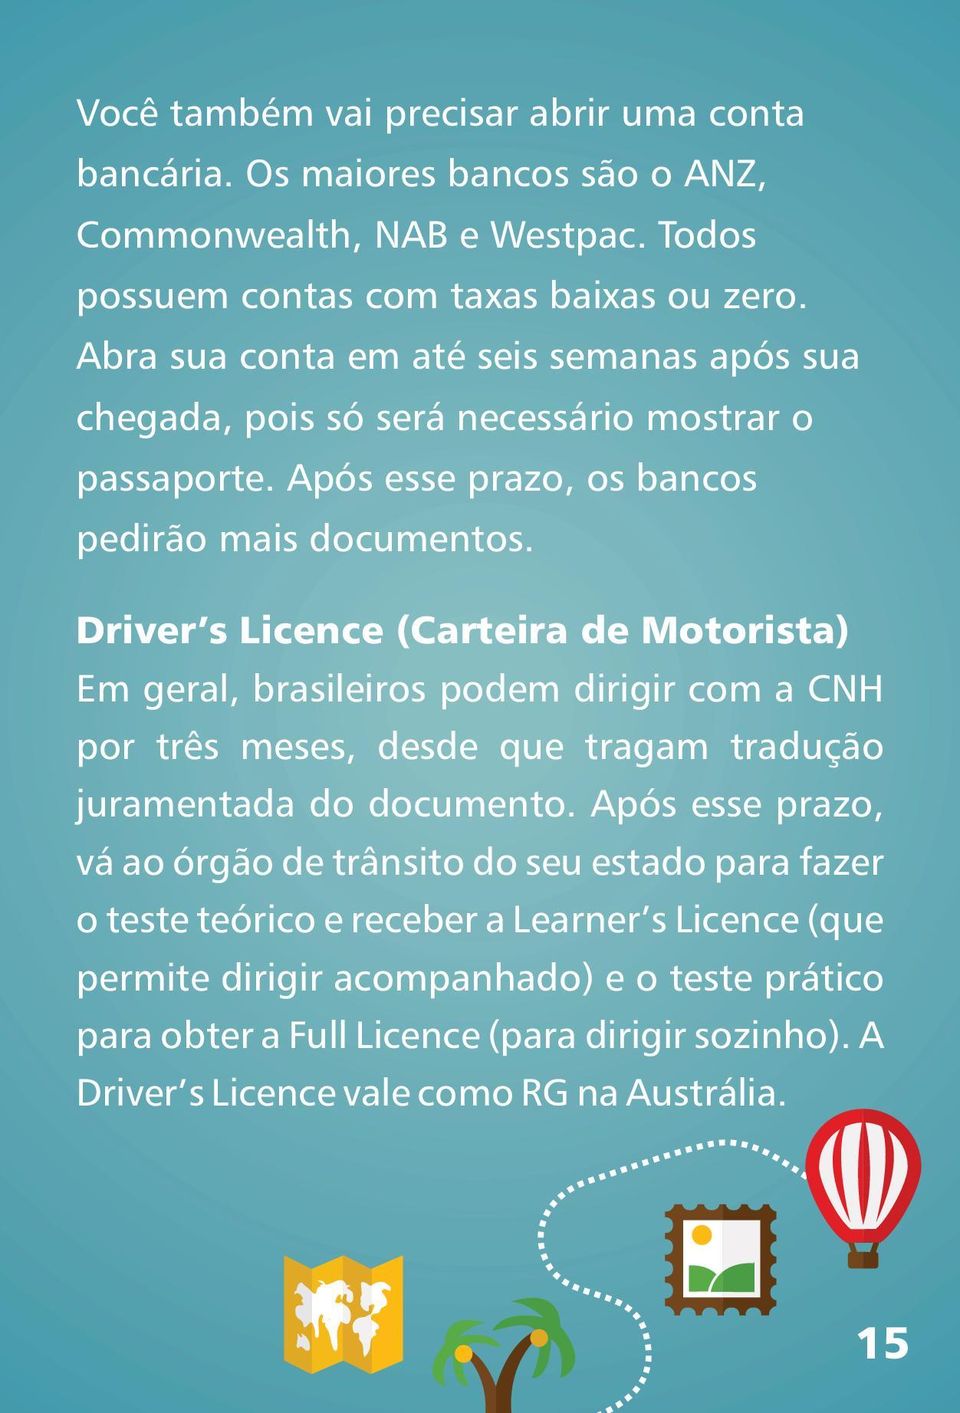 Driver s Licence (Carteira de Motorista) Em geral, brasileiros podem dirigir com a CNH por três meses, desde que tragam tradução juramentada do documento.